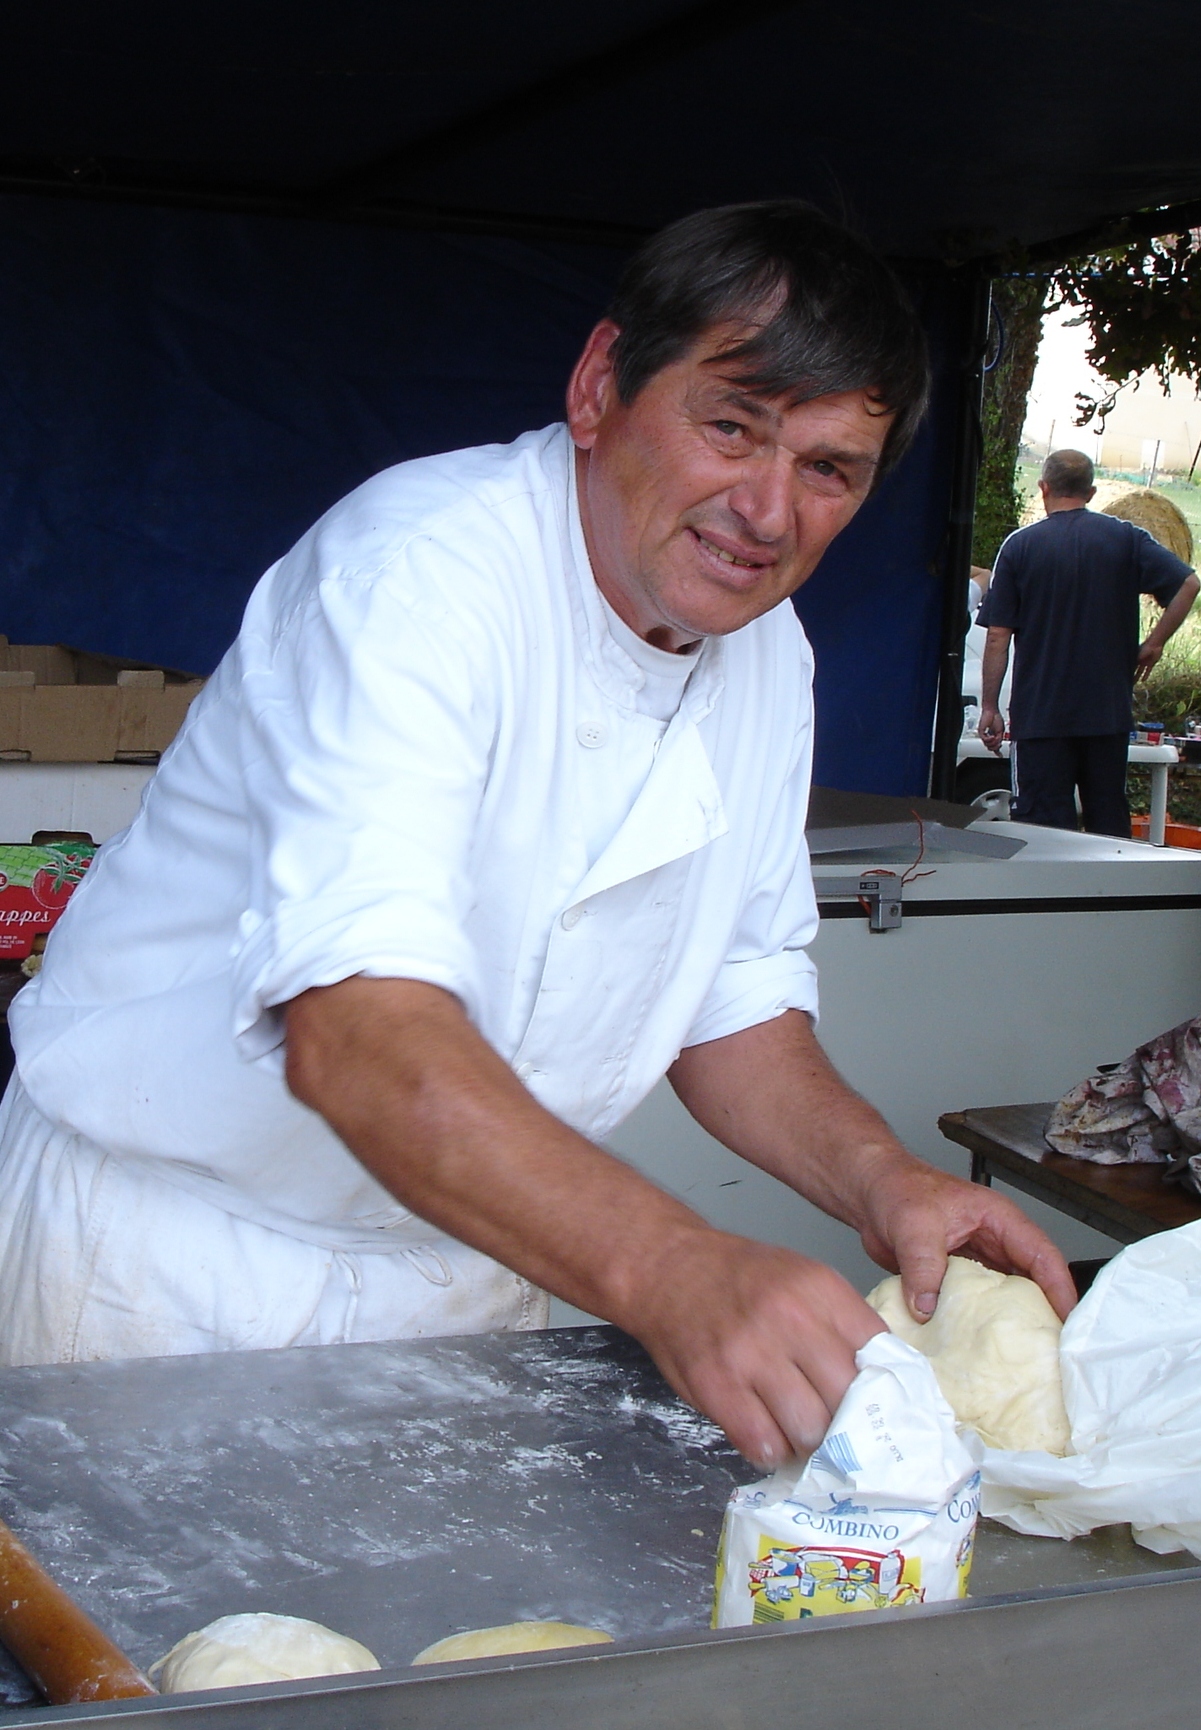 Ci-contre : Daniel DÉTARET fabriquant sa fameuse galette aux patates !
Saint-Hilaire - 06/08/2006 
© Romain PERSONNAT